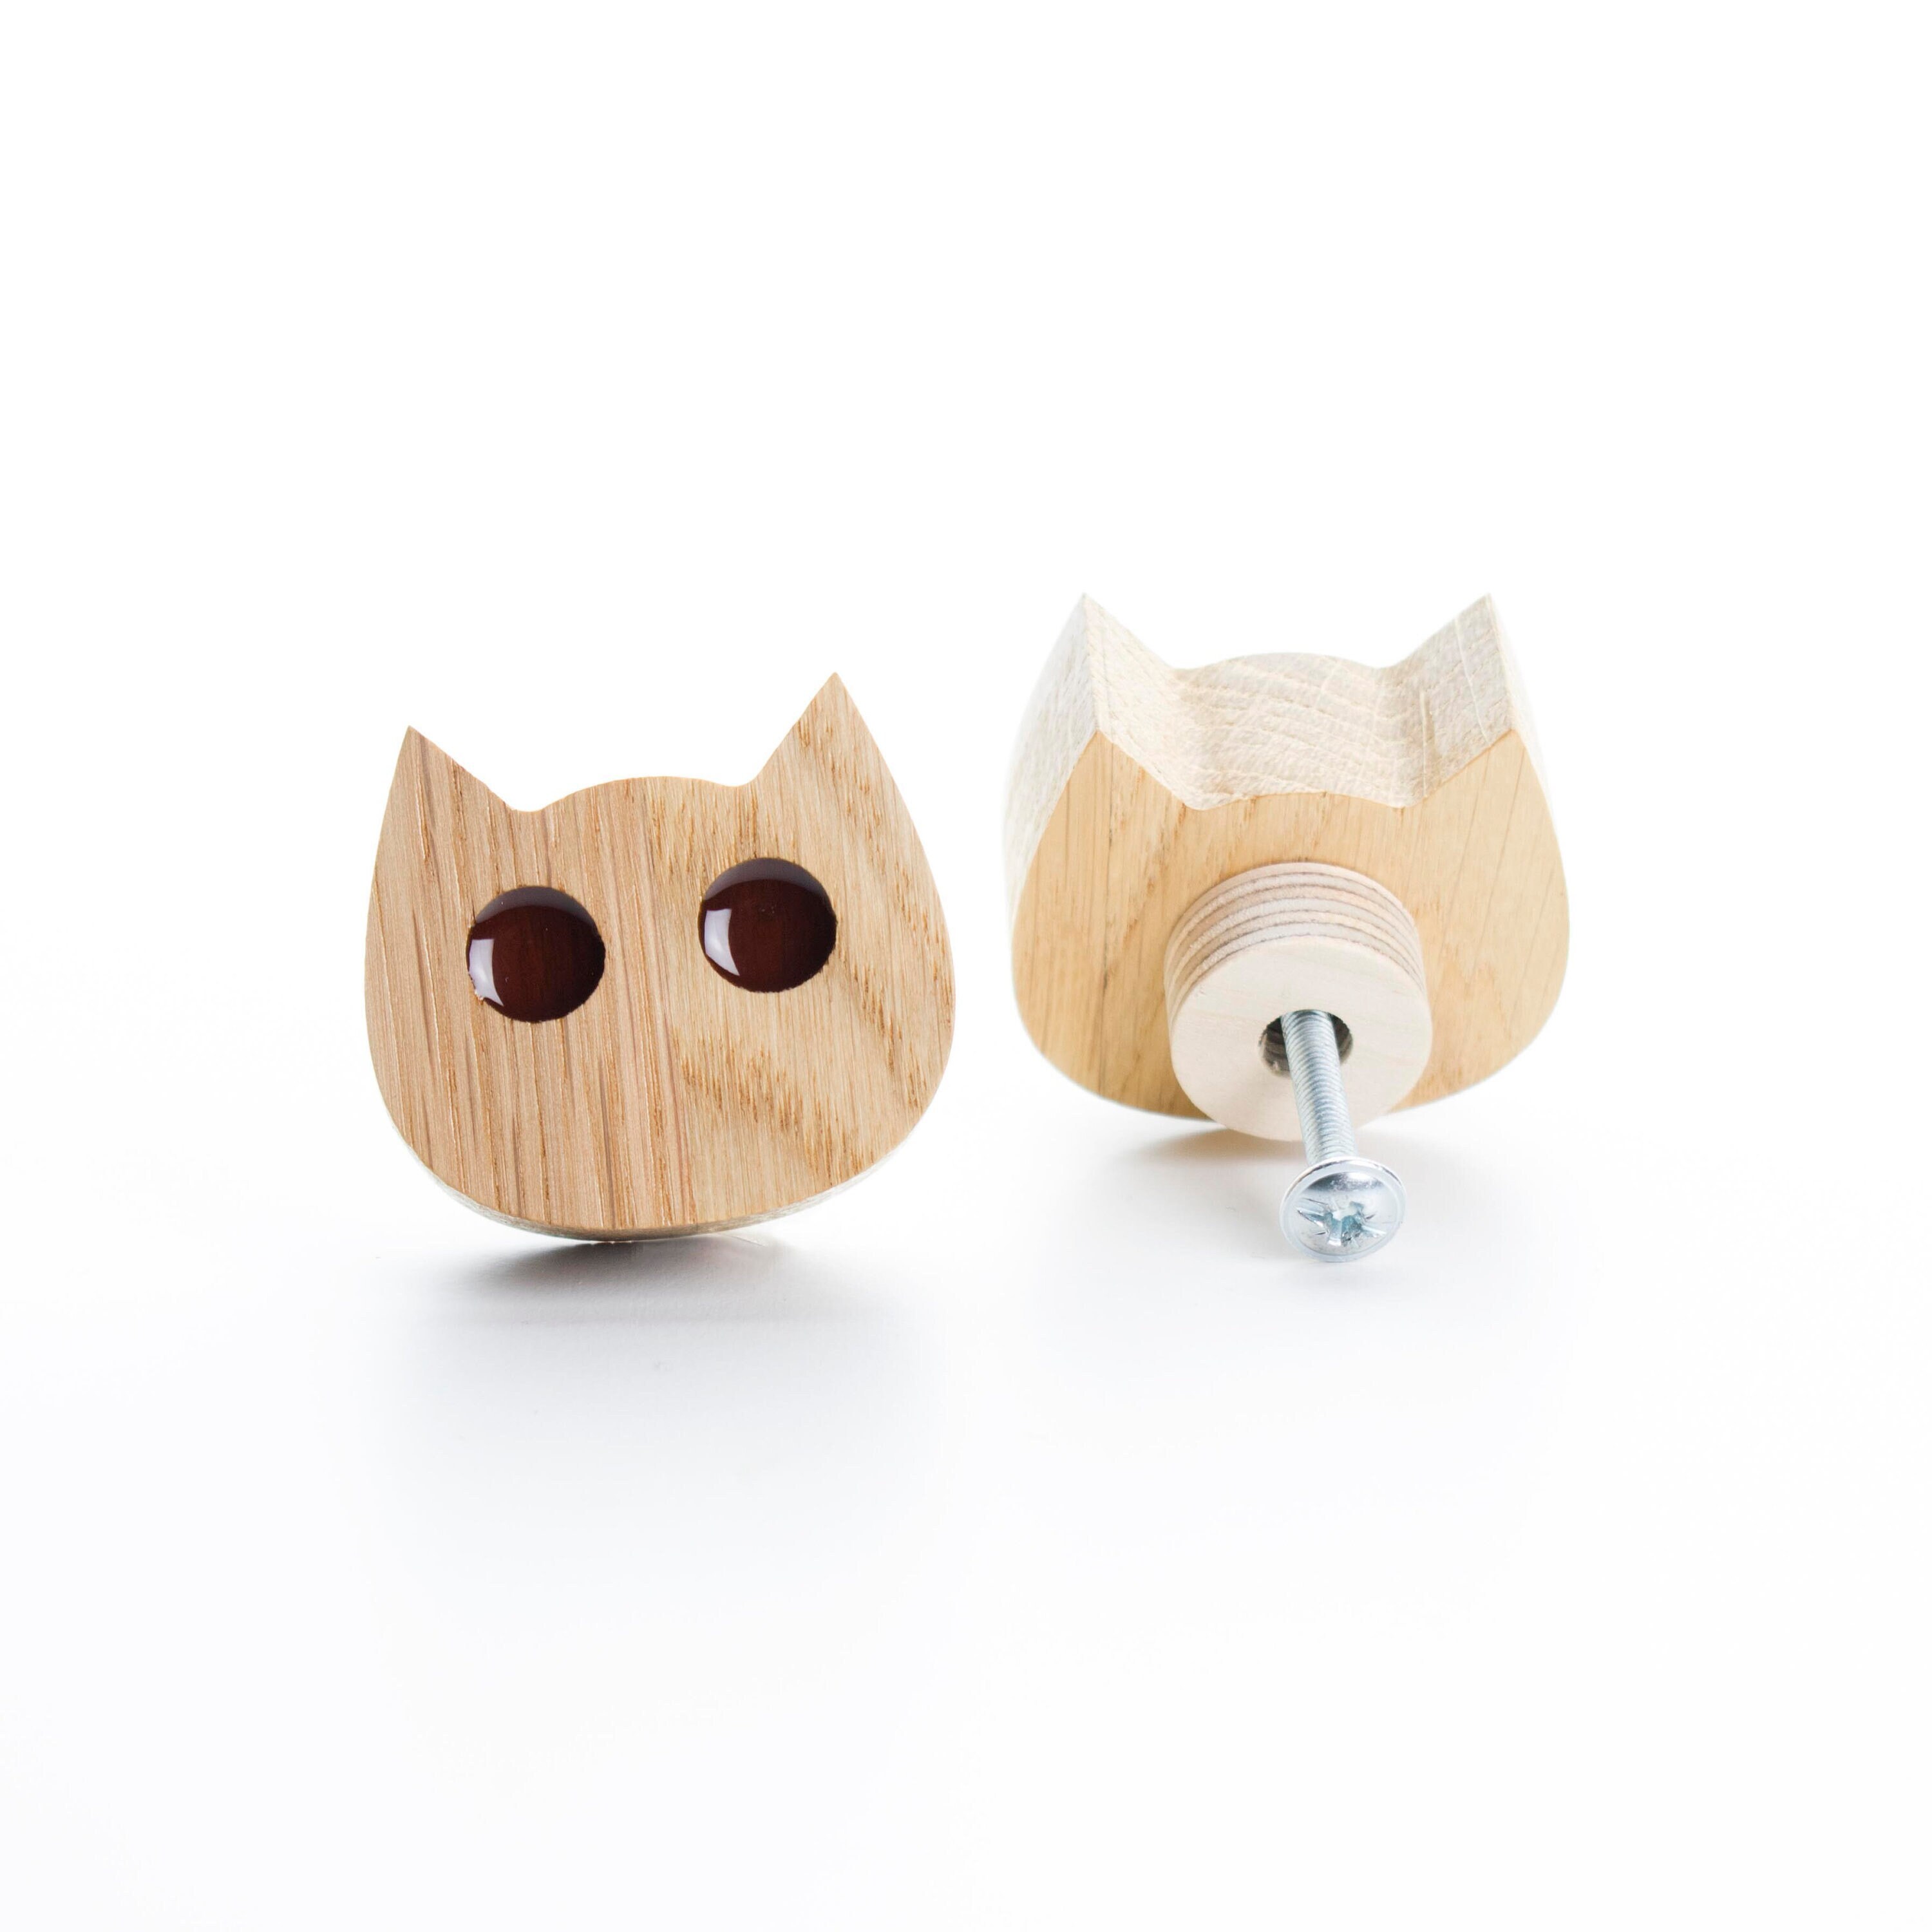 drawer knob kitty chat yeux rouge foncé bois de chêne avec résine époxy, bouton commode fleurs, meubles design moderne, mobilier pour enfants